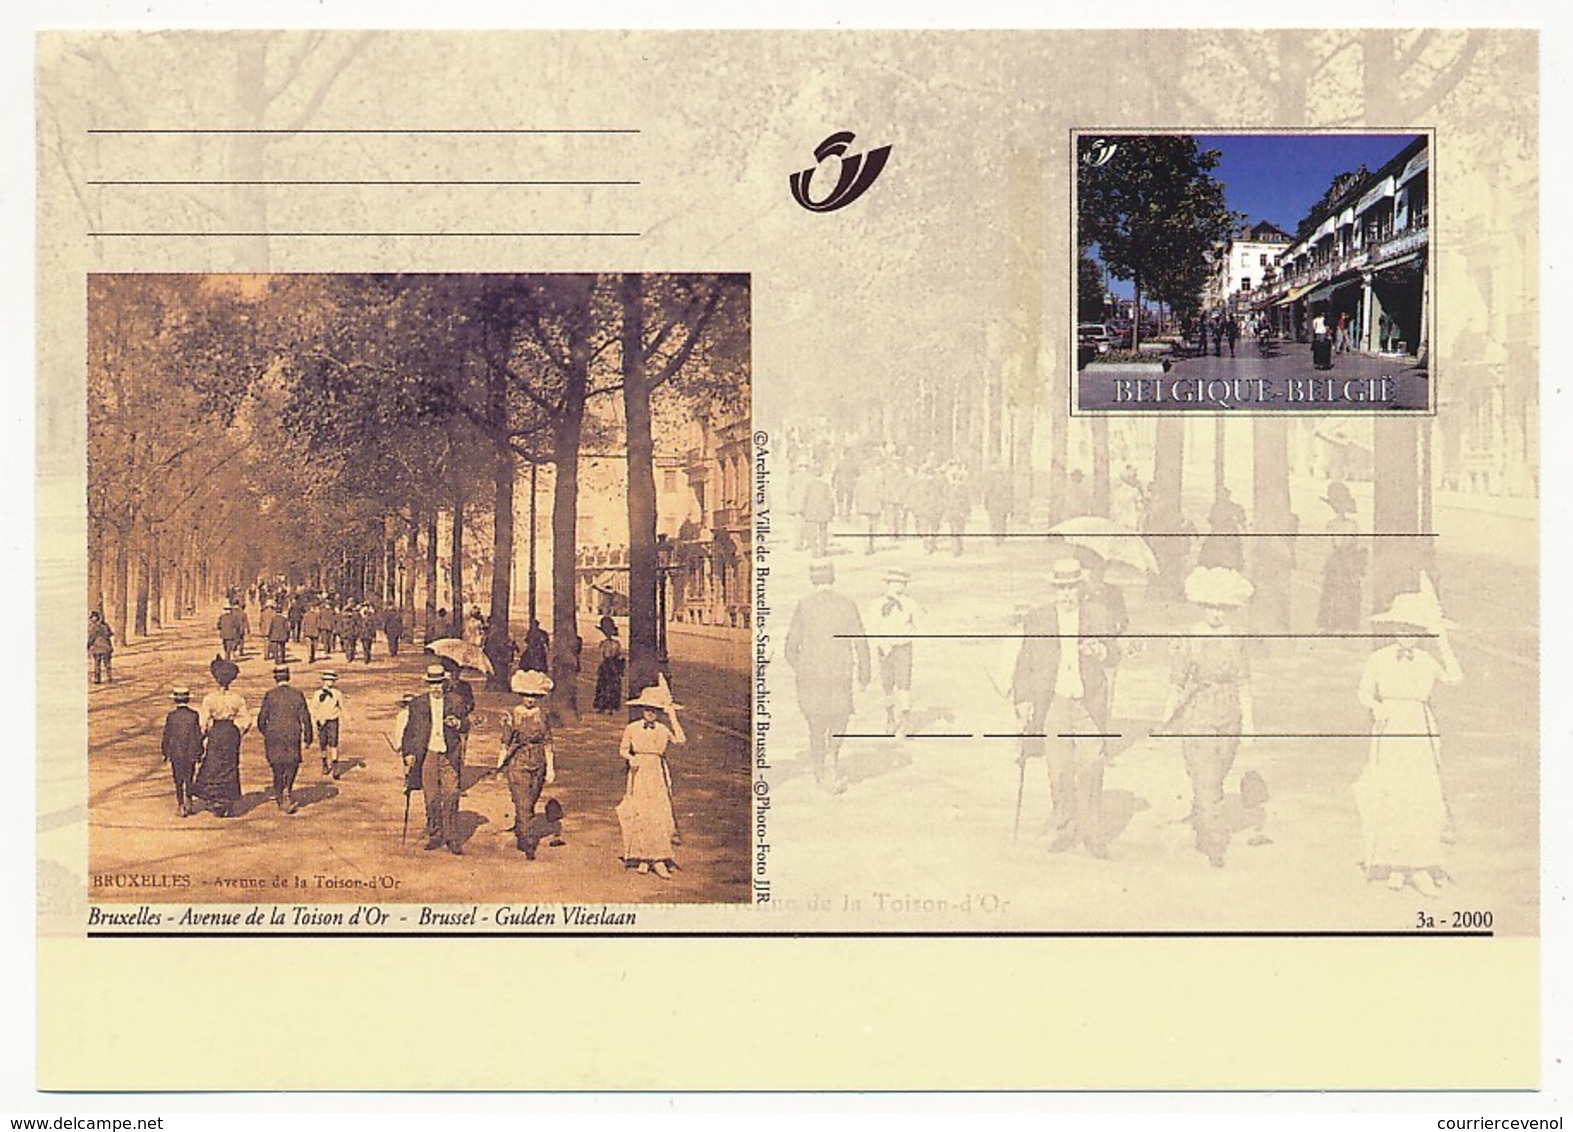 BELGIQUE => Lot de 32 cartes différentes, entiers postaux illustrés commémoratifs, neufs